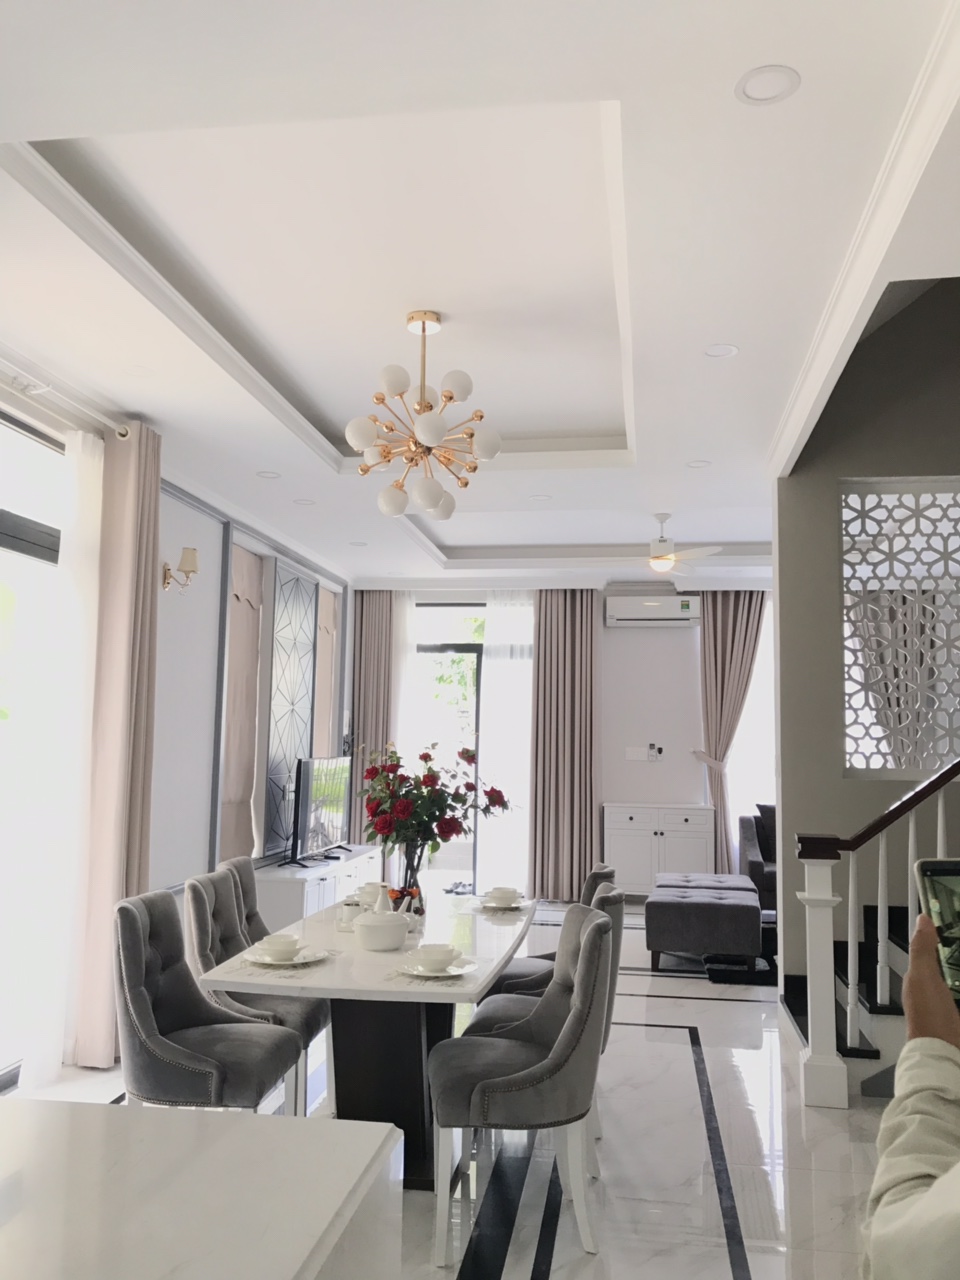 Cần bán villa tại đường Nguyễn Văn Hưởng, P. Thảo Điền, Q2, Tp.HCM, diện tích 442,8m2, giá 41 tỷ